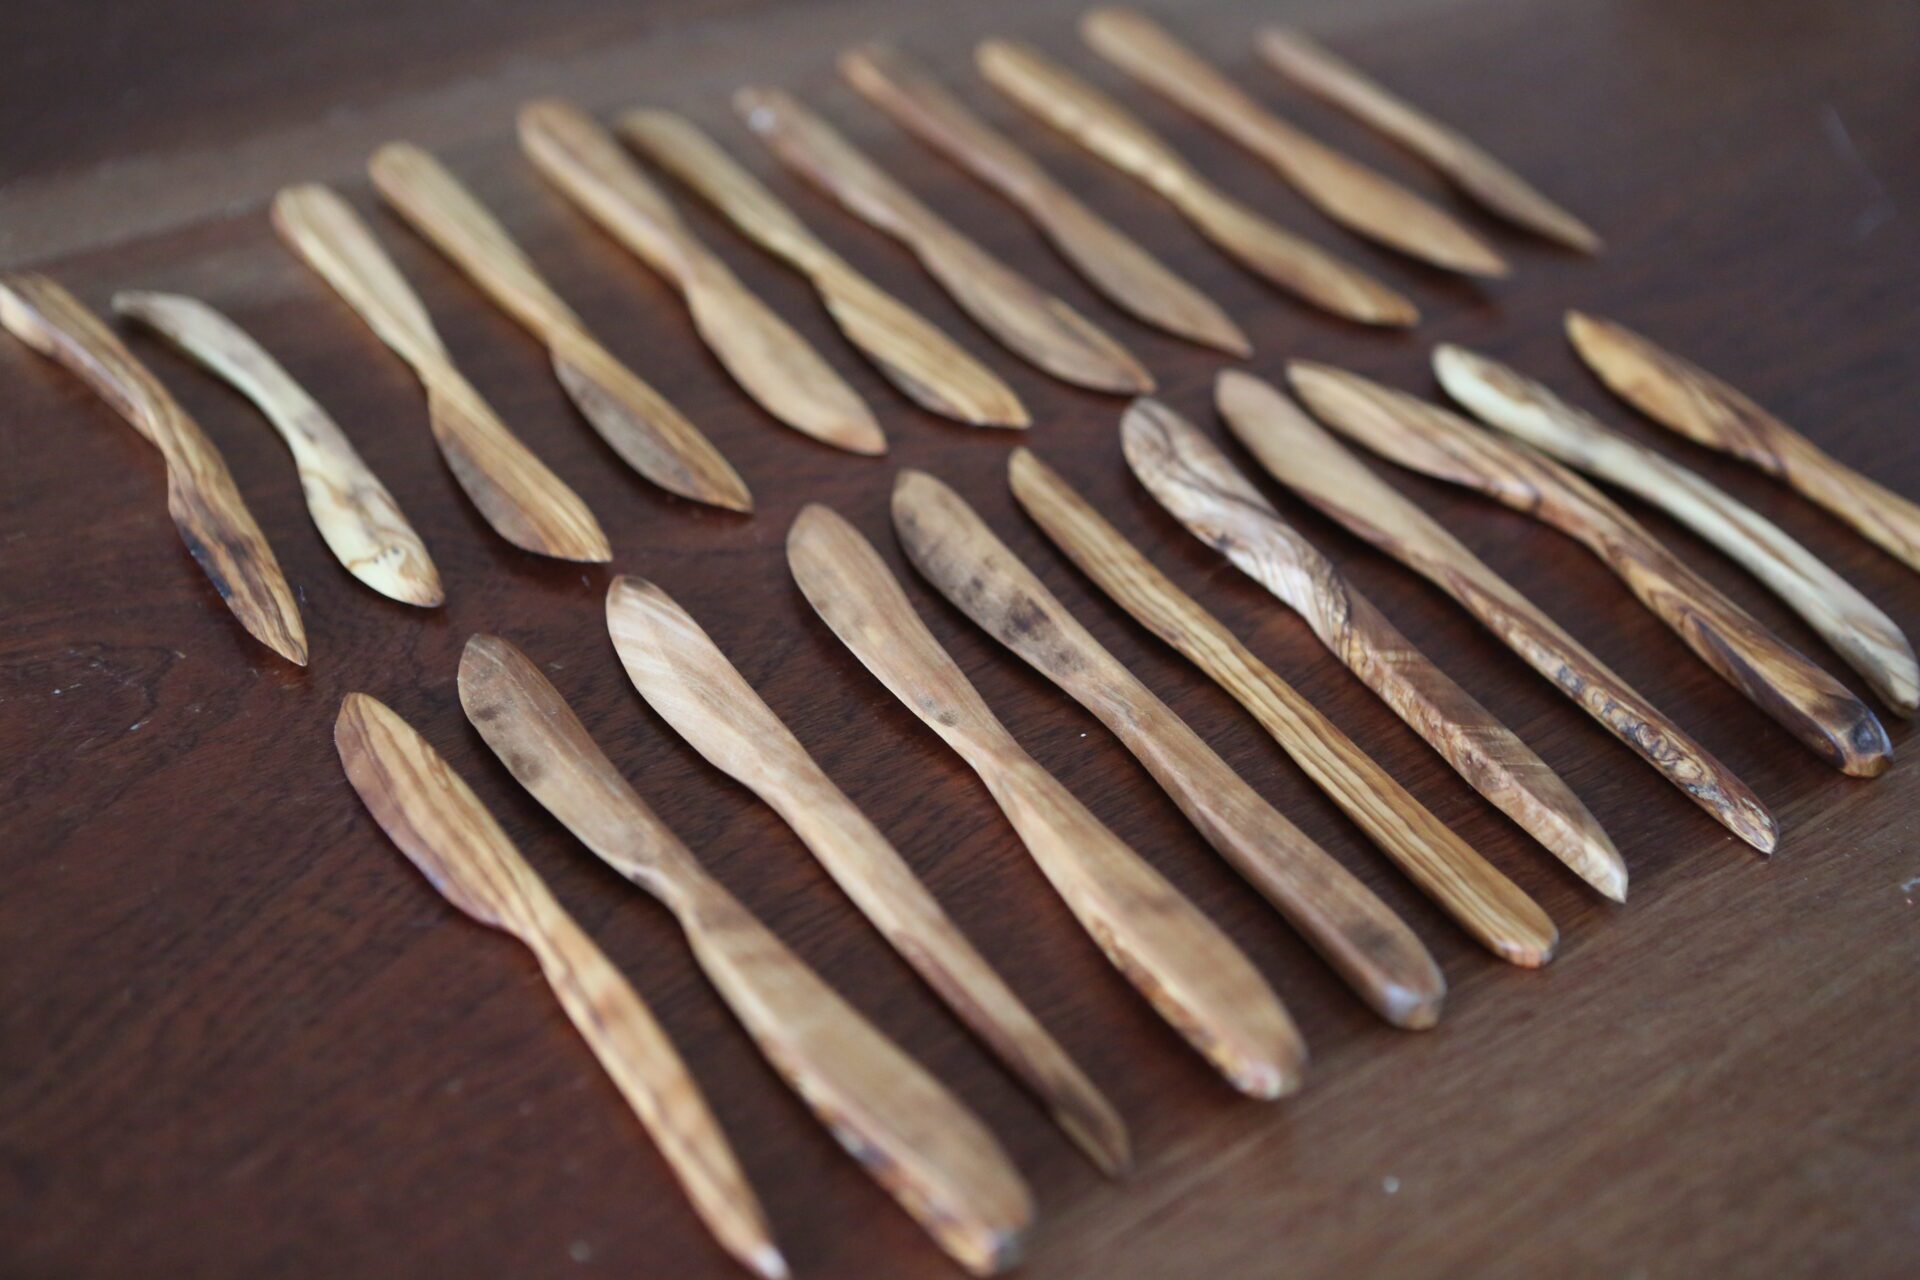 des ustensiles de cuisine en bois bordent des cuillères en bois